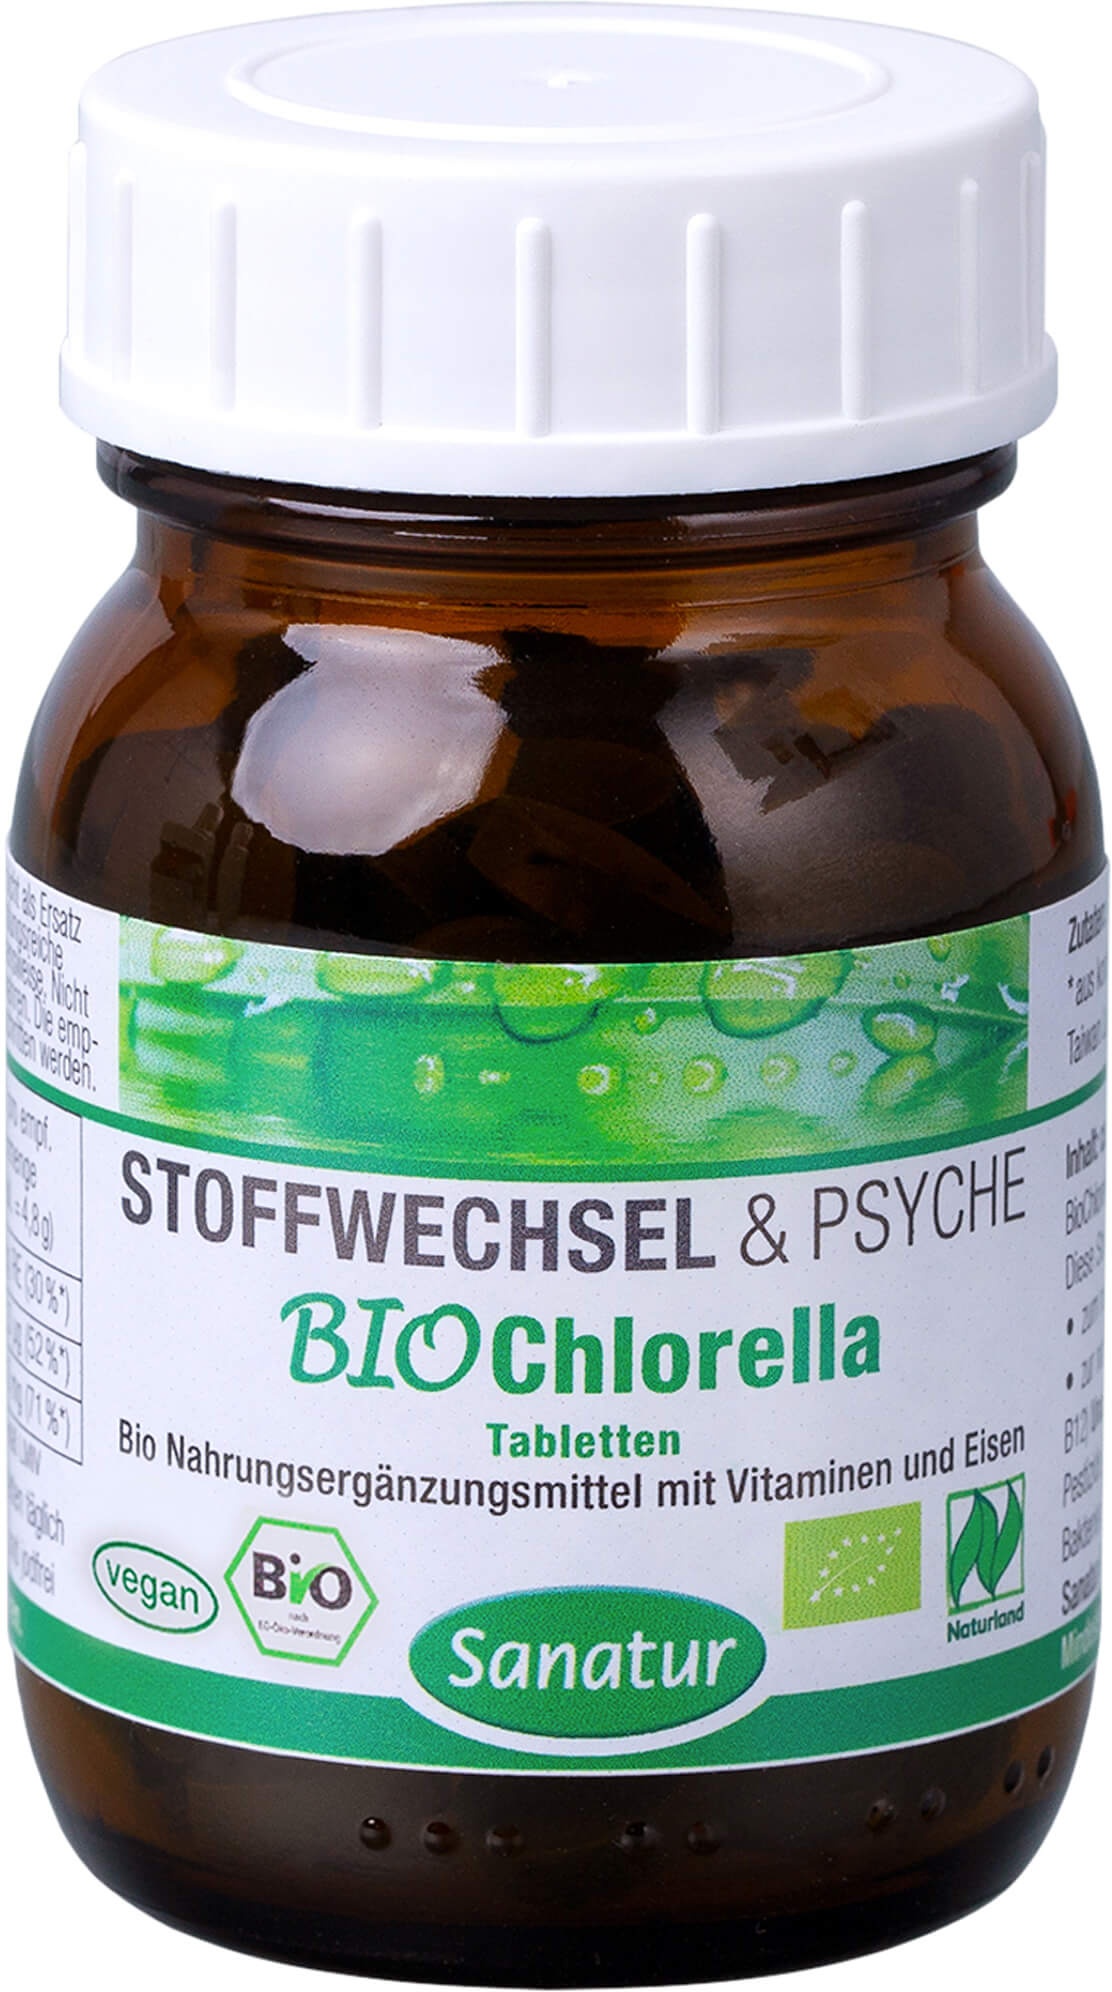 biochlorella